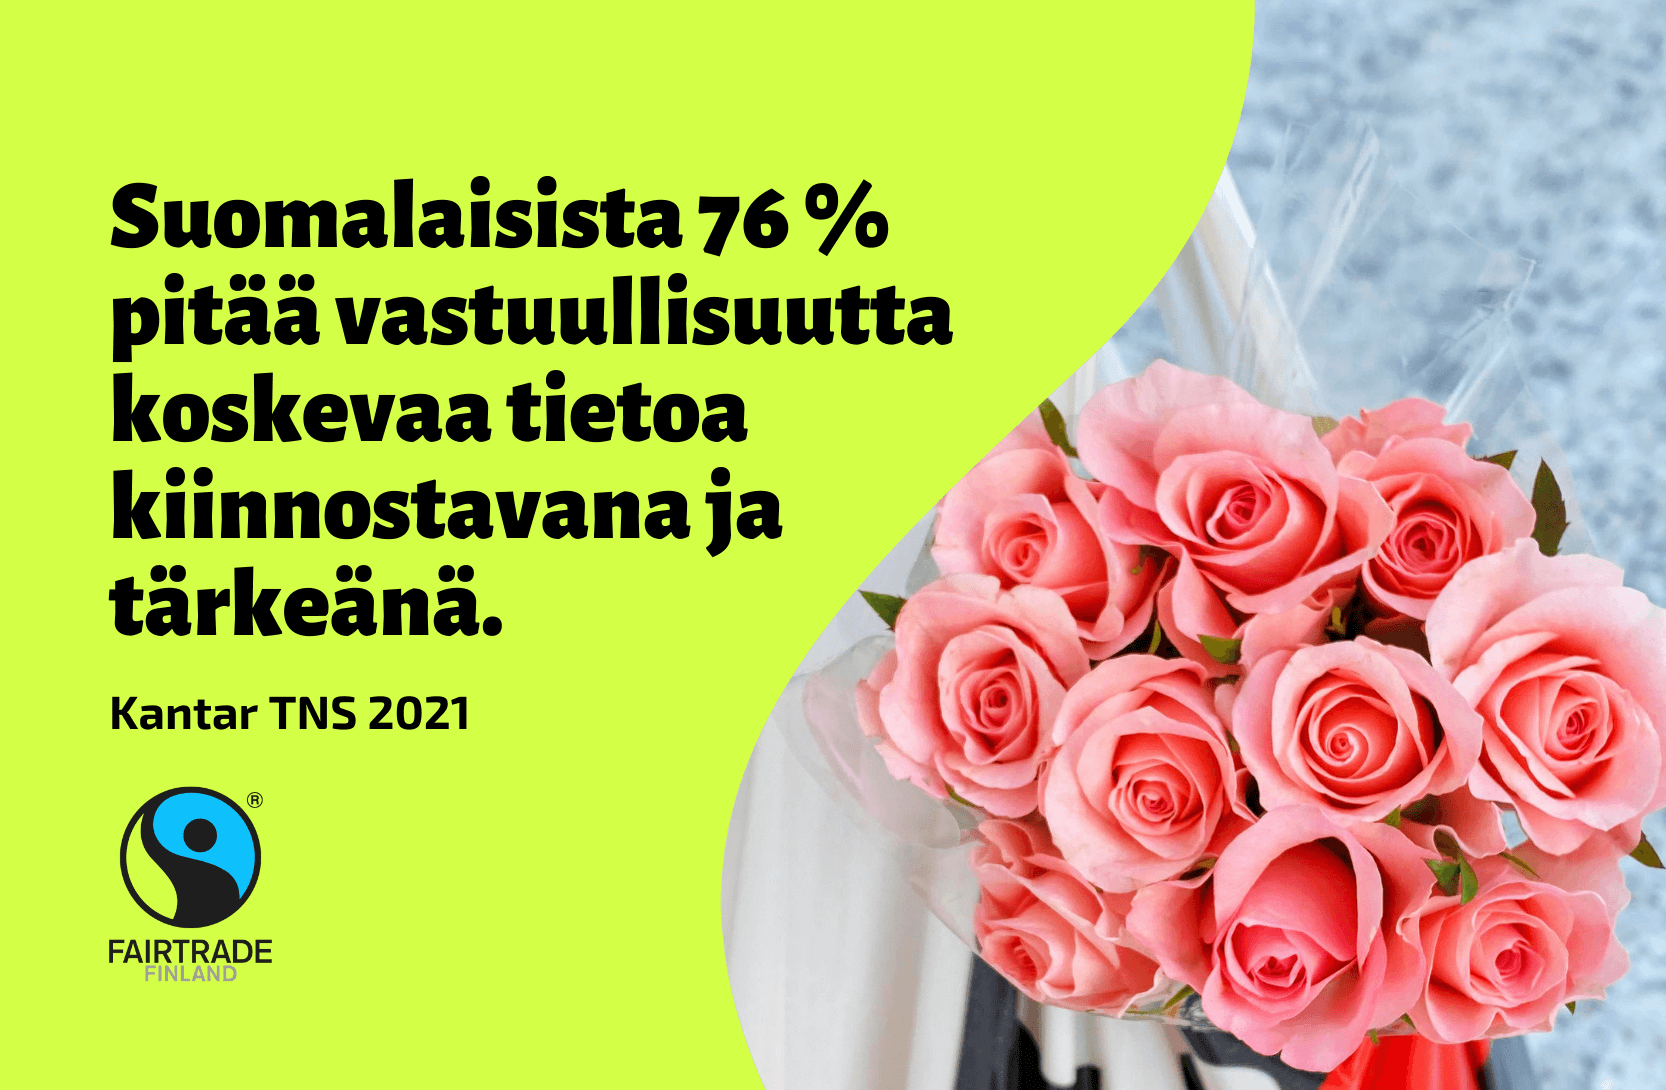 Reilu kauppa ry:n bränditutkimus osoittaa, että suomalaisista 76 prosenttia pitää vastuullisuutta koskevaa tietoa kiinnostavana ja tärkeänä. Kuvassa Reilun kaupan ruusuja ostoskassissa.